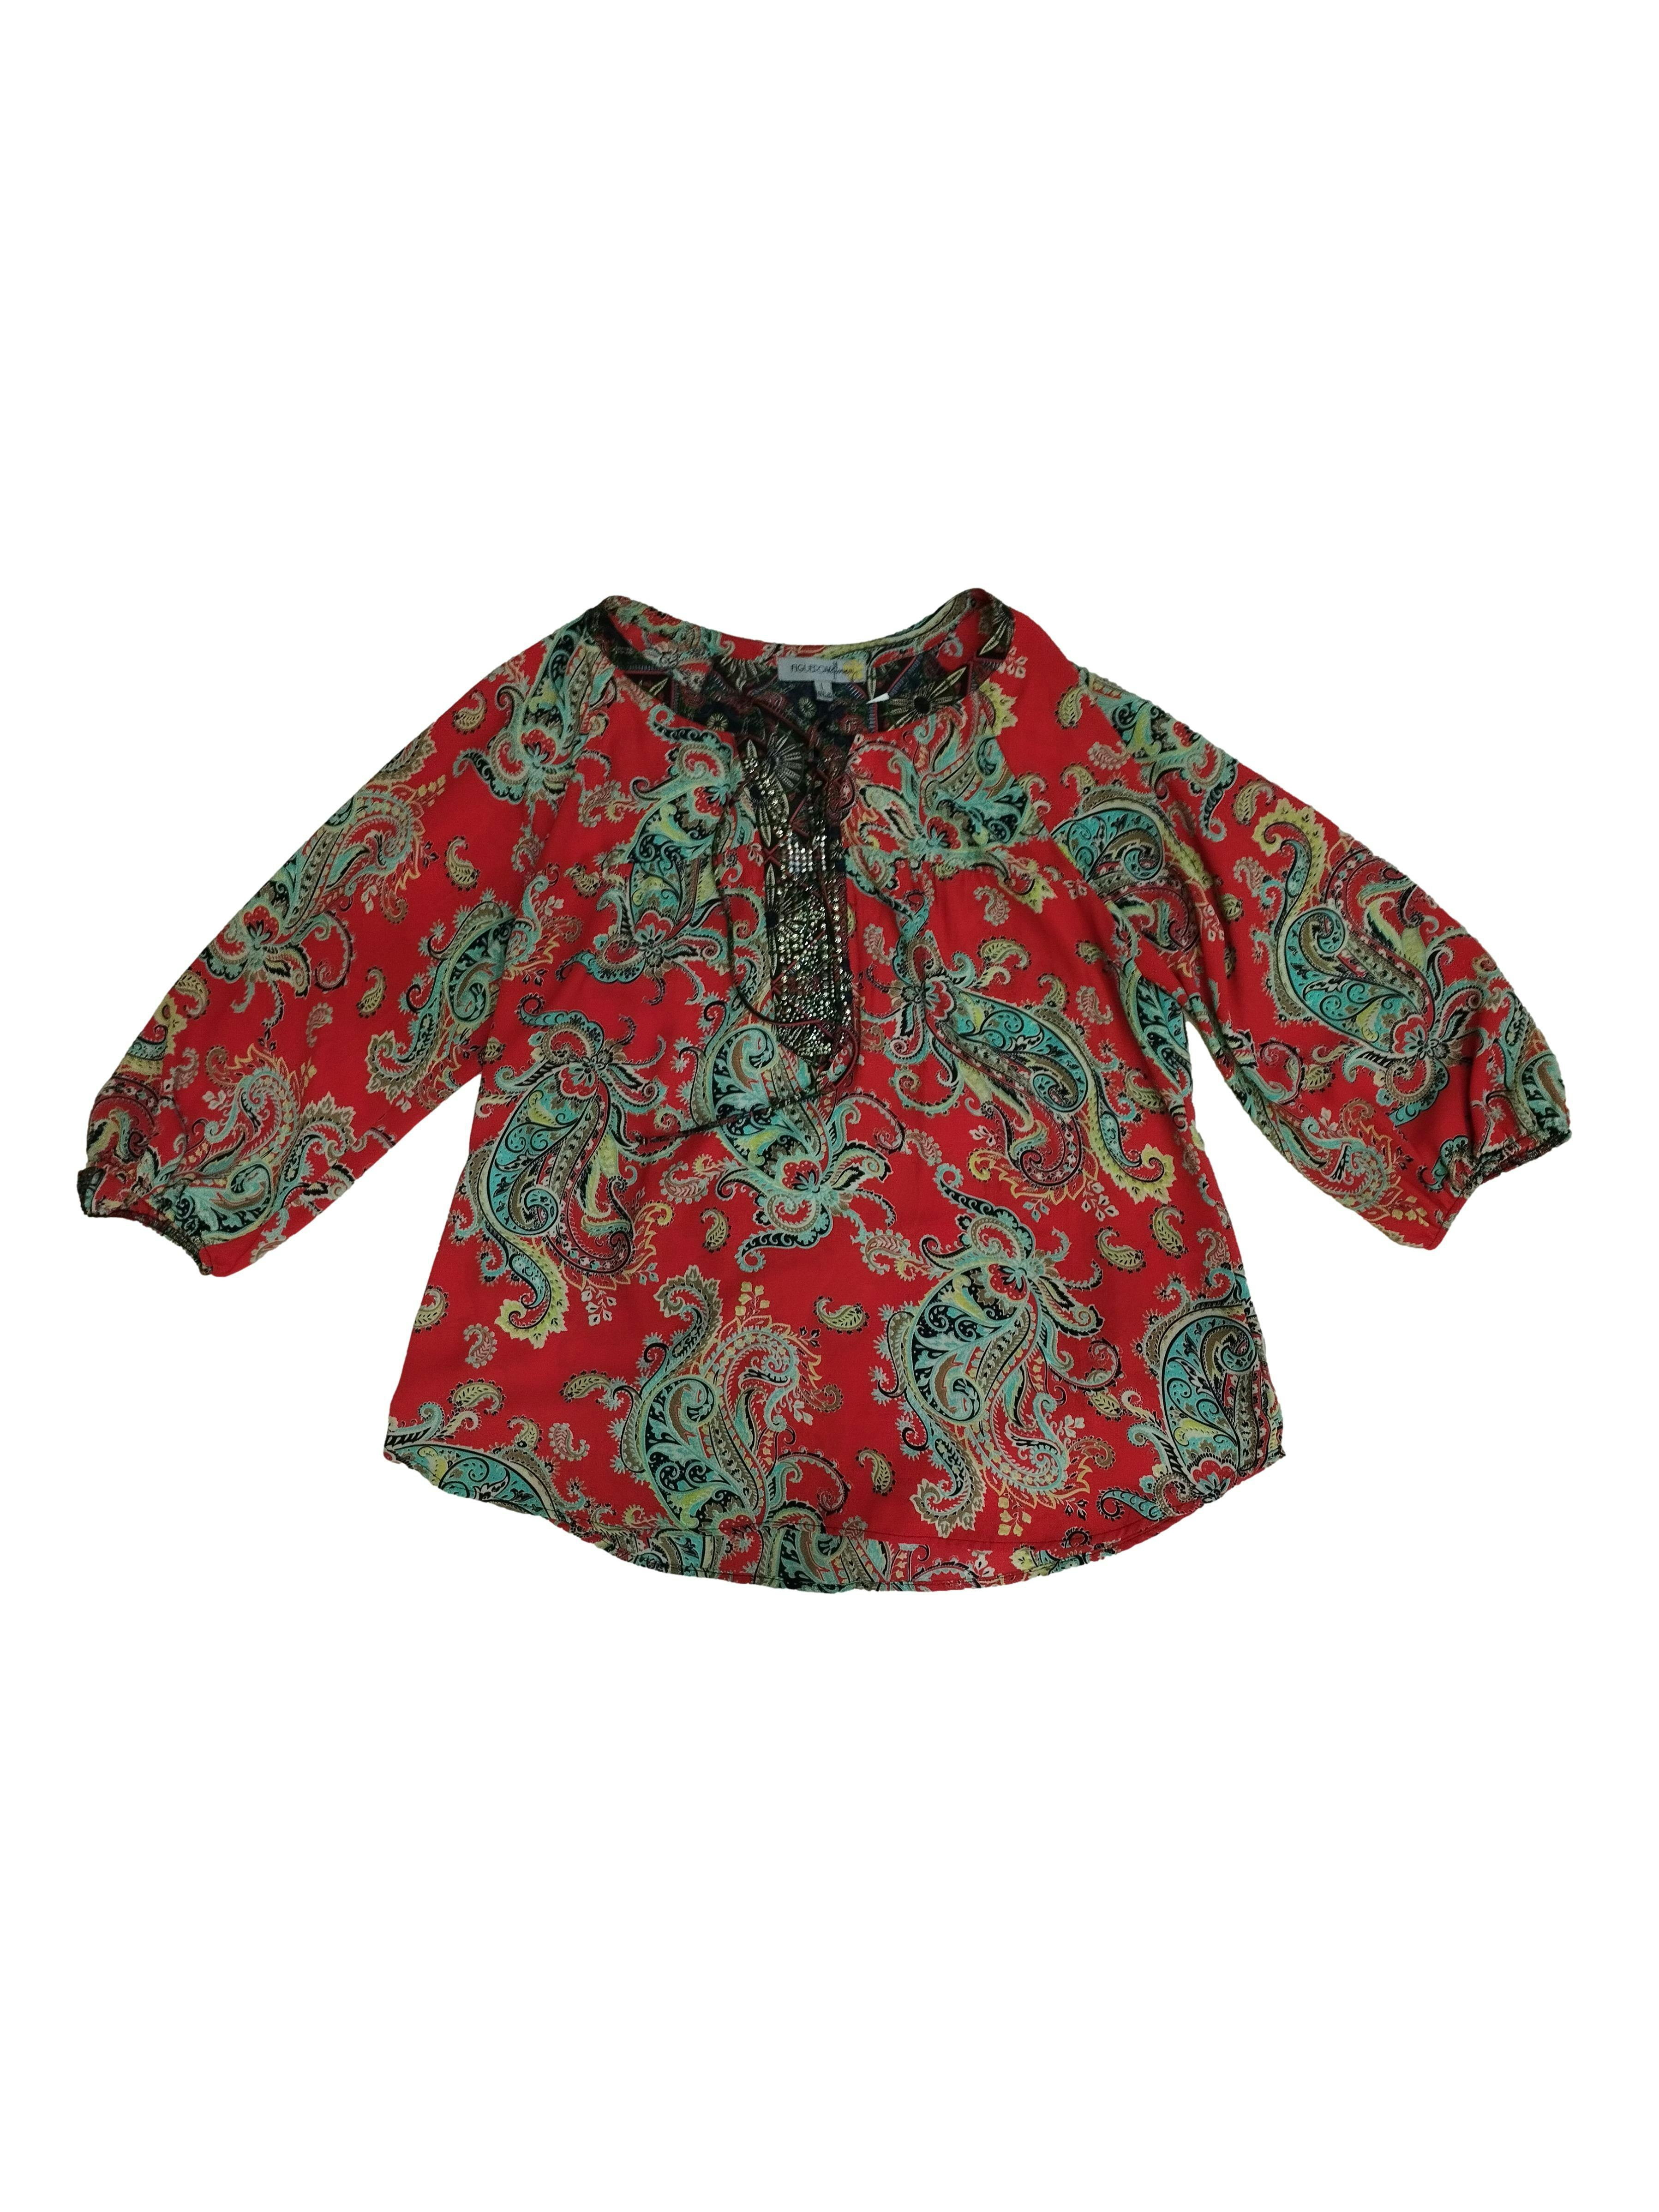 Blusa de gasa roja con detalles tribales,cuello neru,aplicaciones de tachas en el pecho,manga larga,puño con elastico.Busto 112cm,largo 69cm,talla L